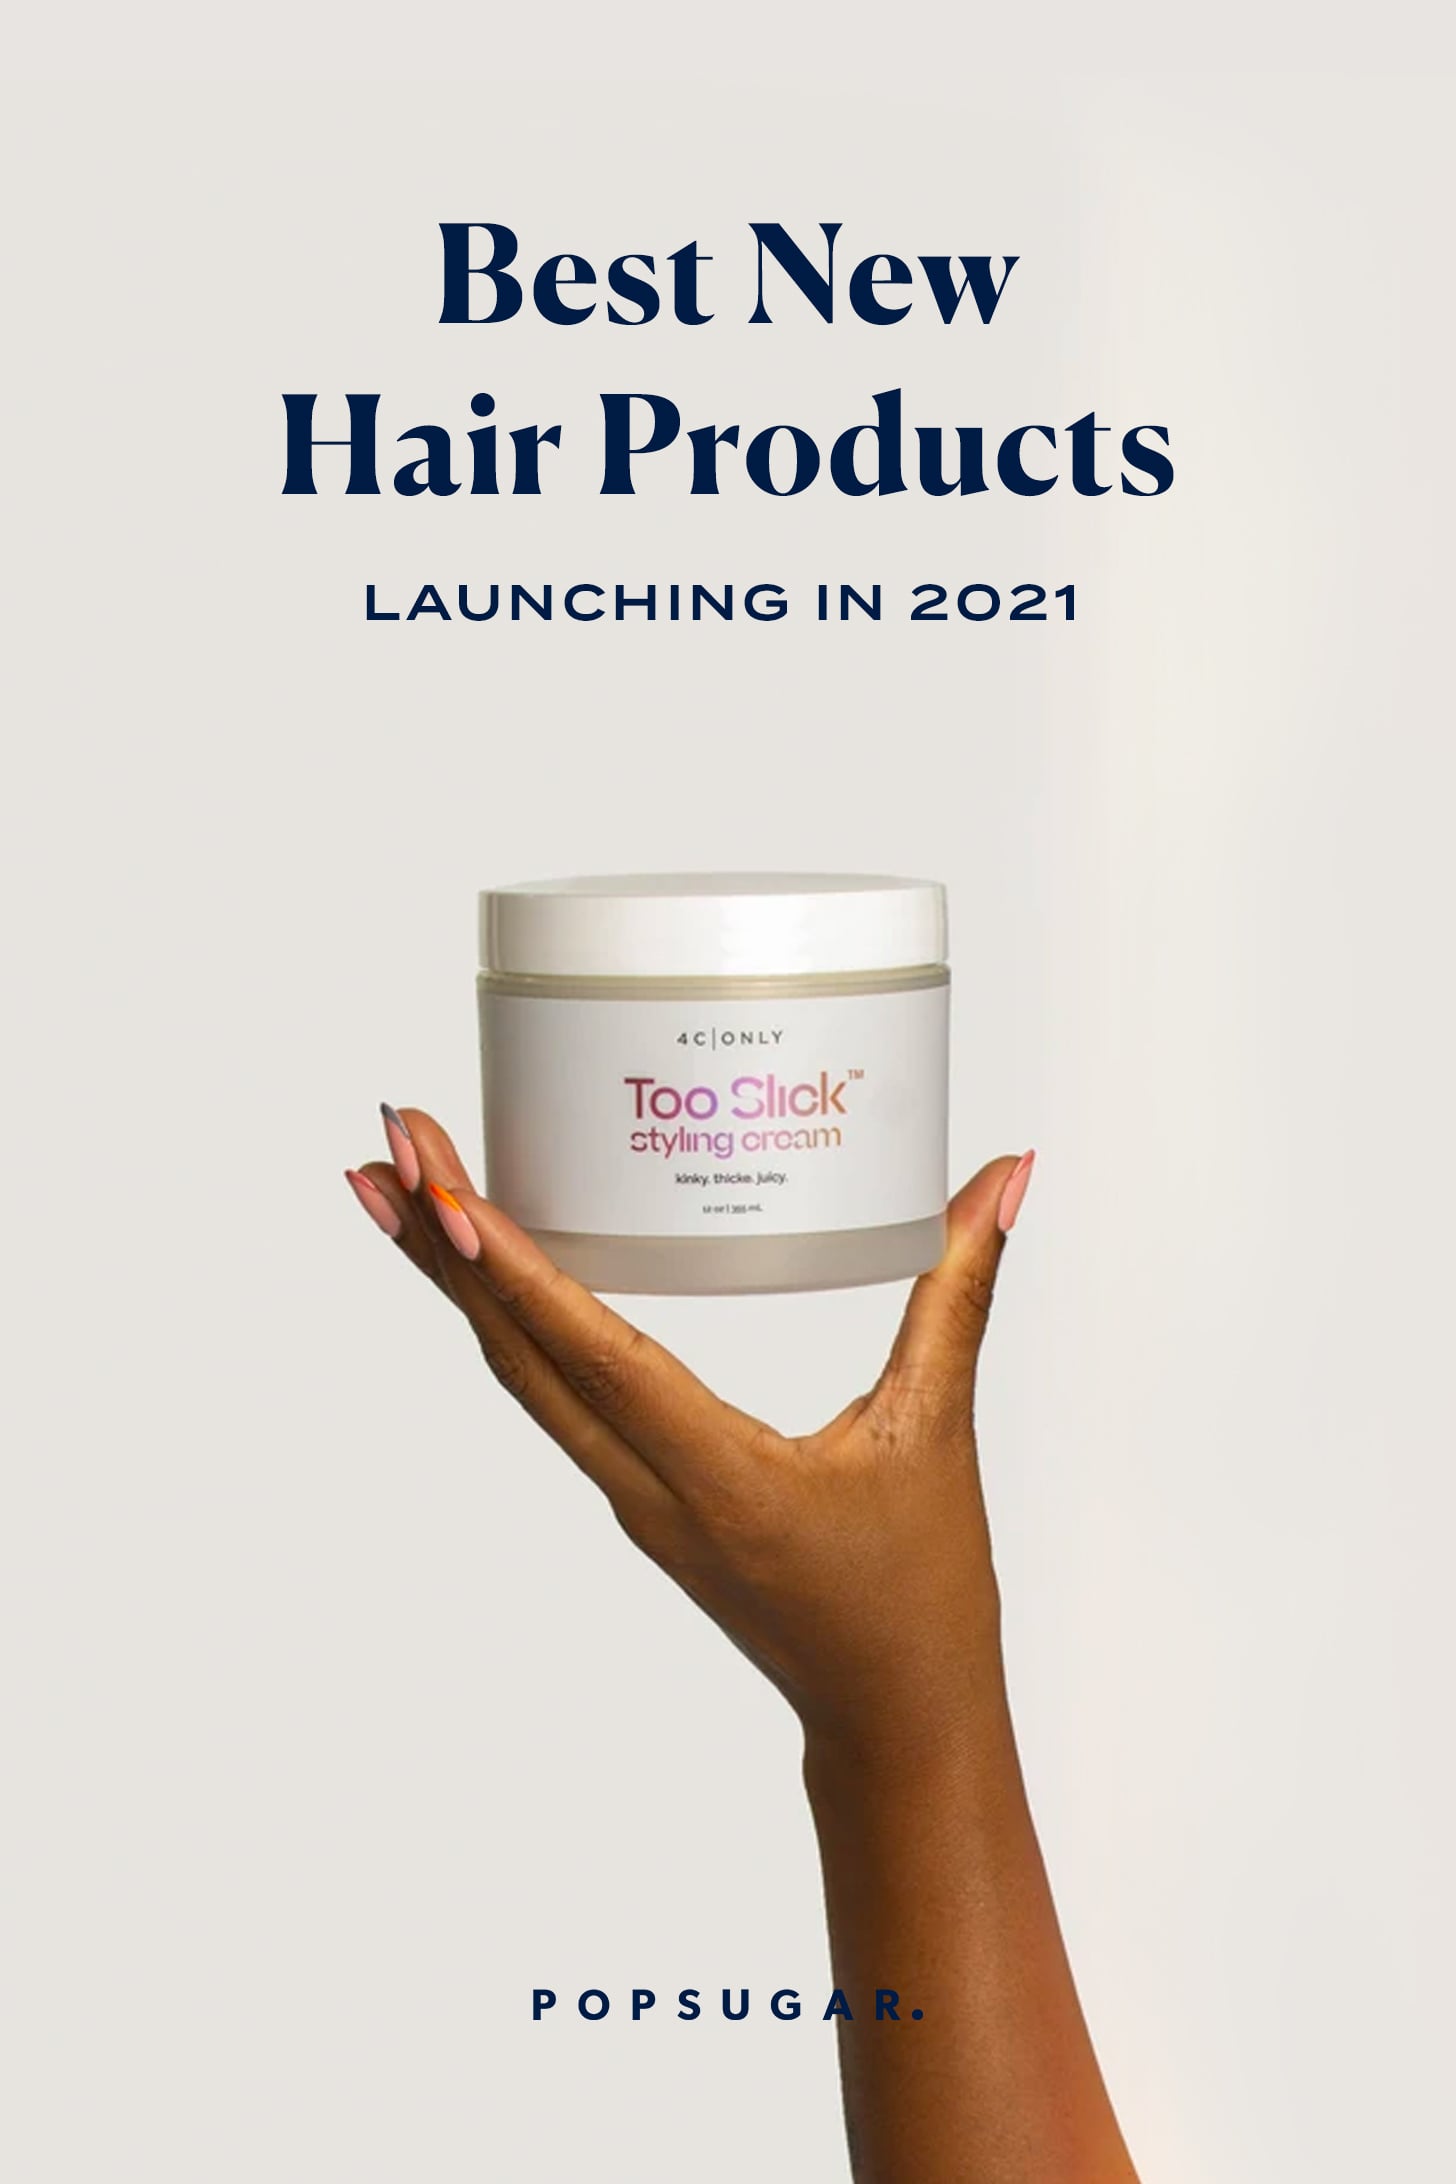 de bästa nya hårprodukterna lanseras i 2021